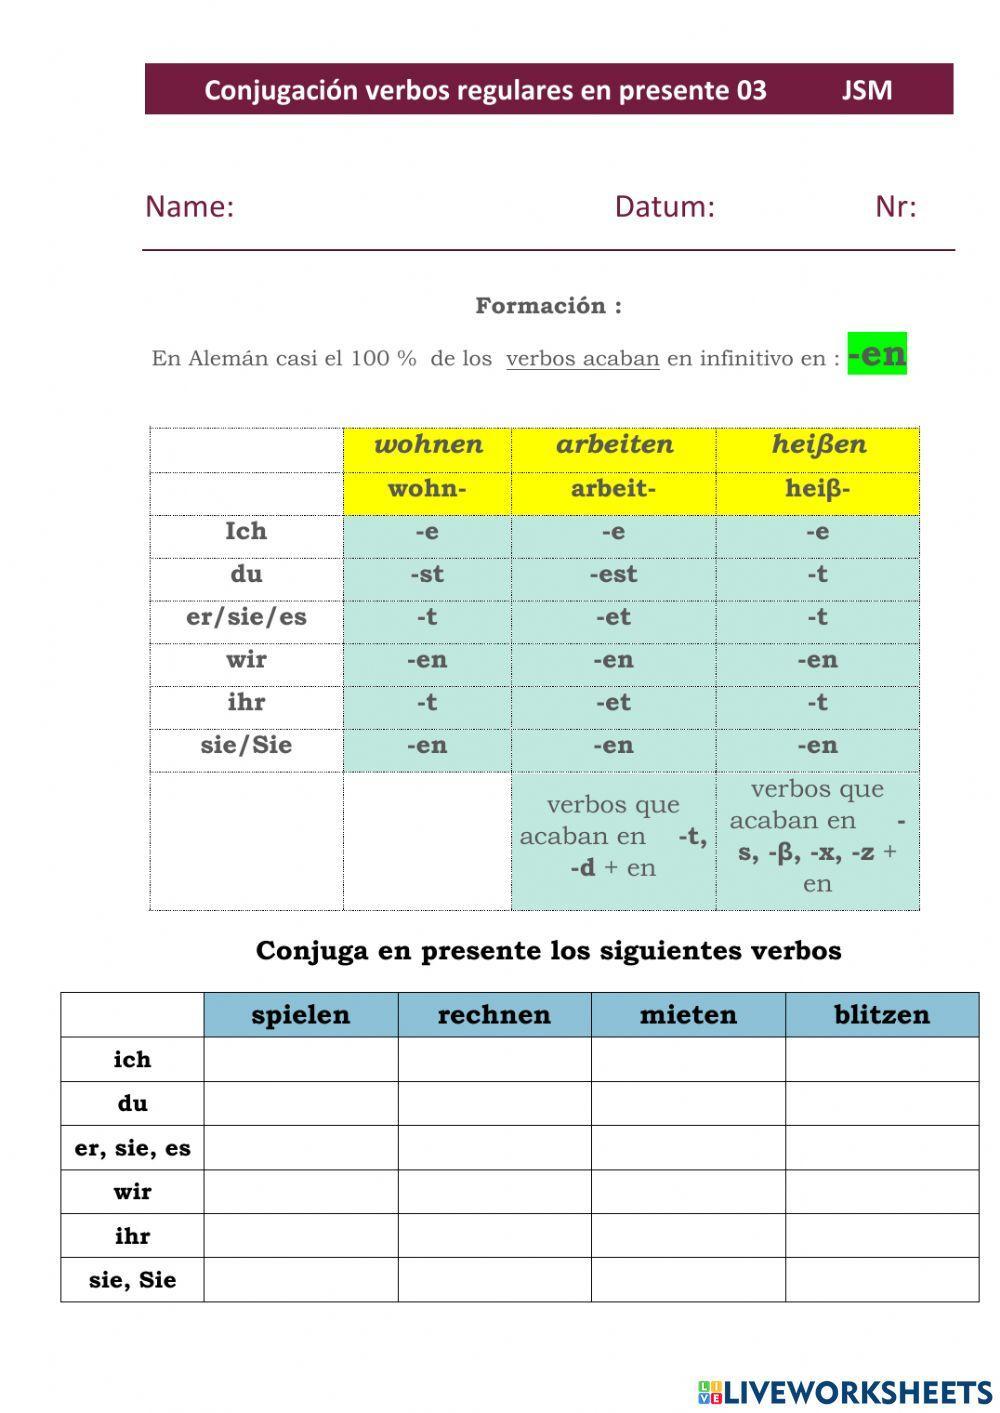 Conjugación verbos regulares en Presente 03